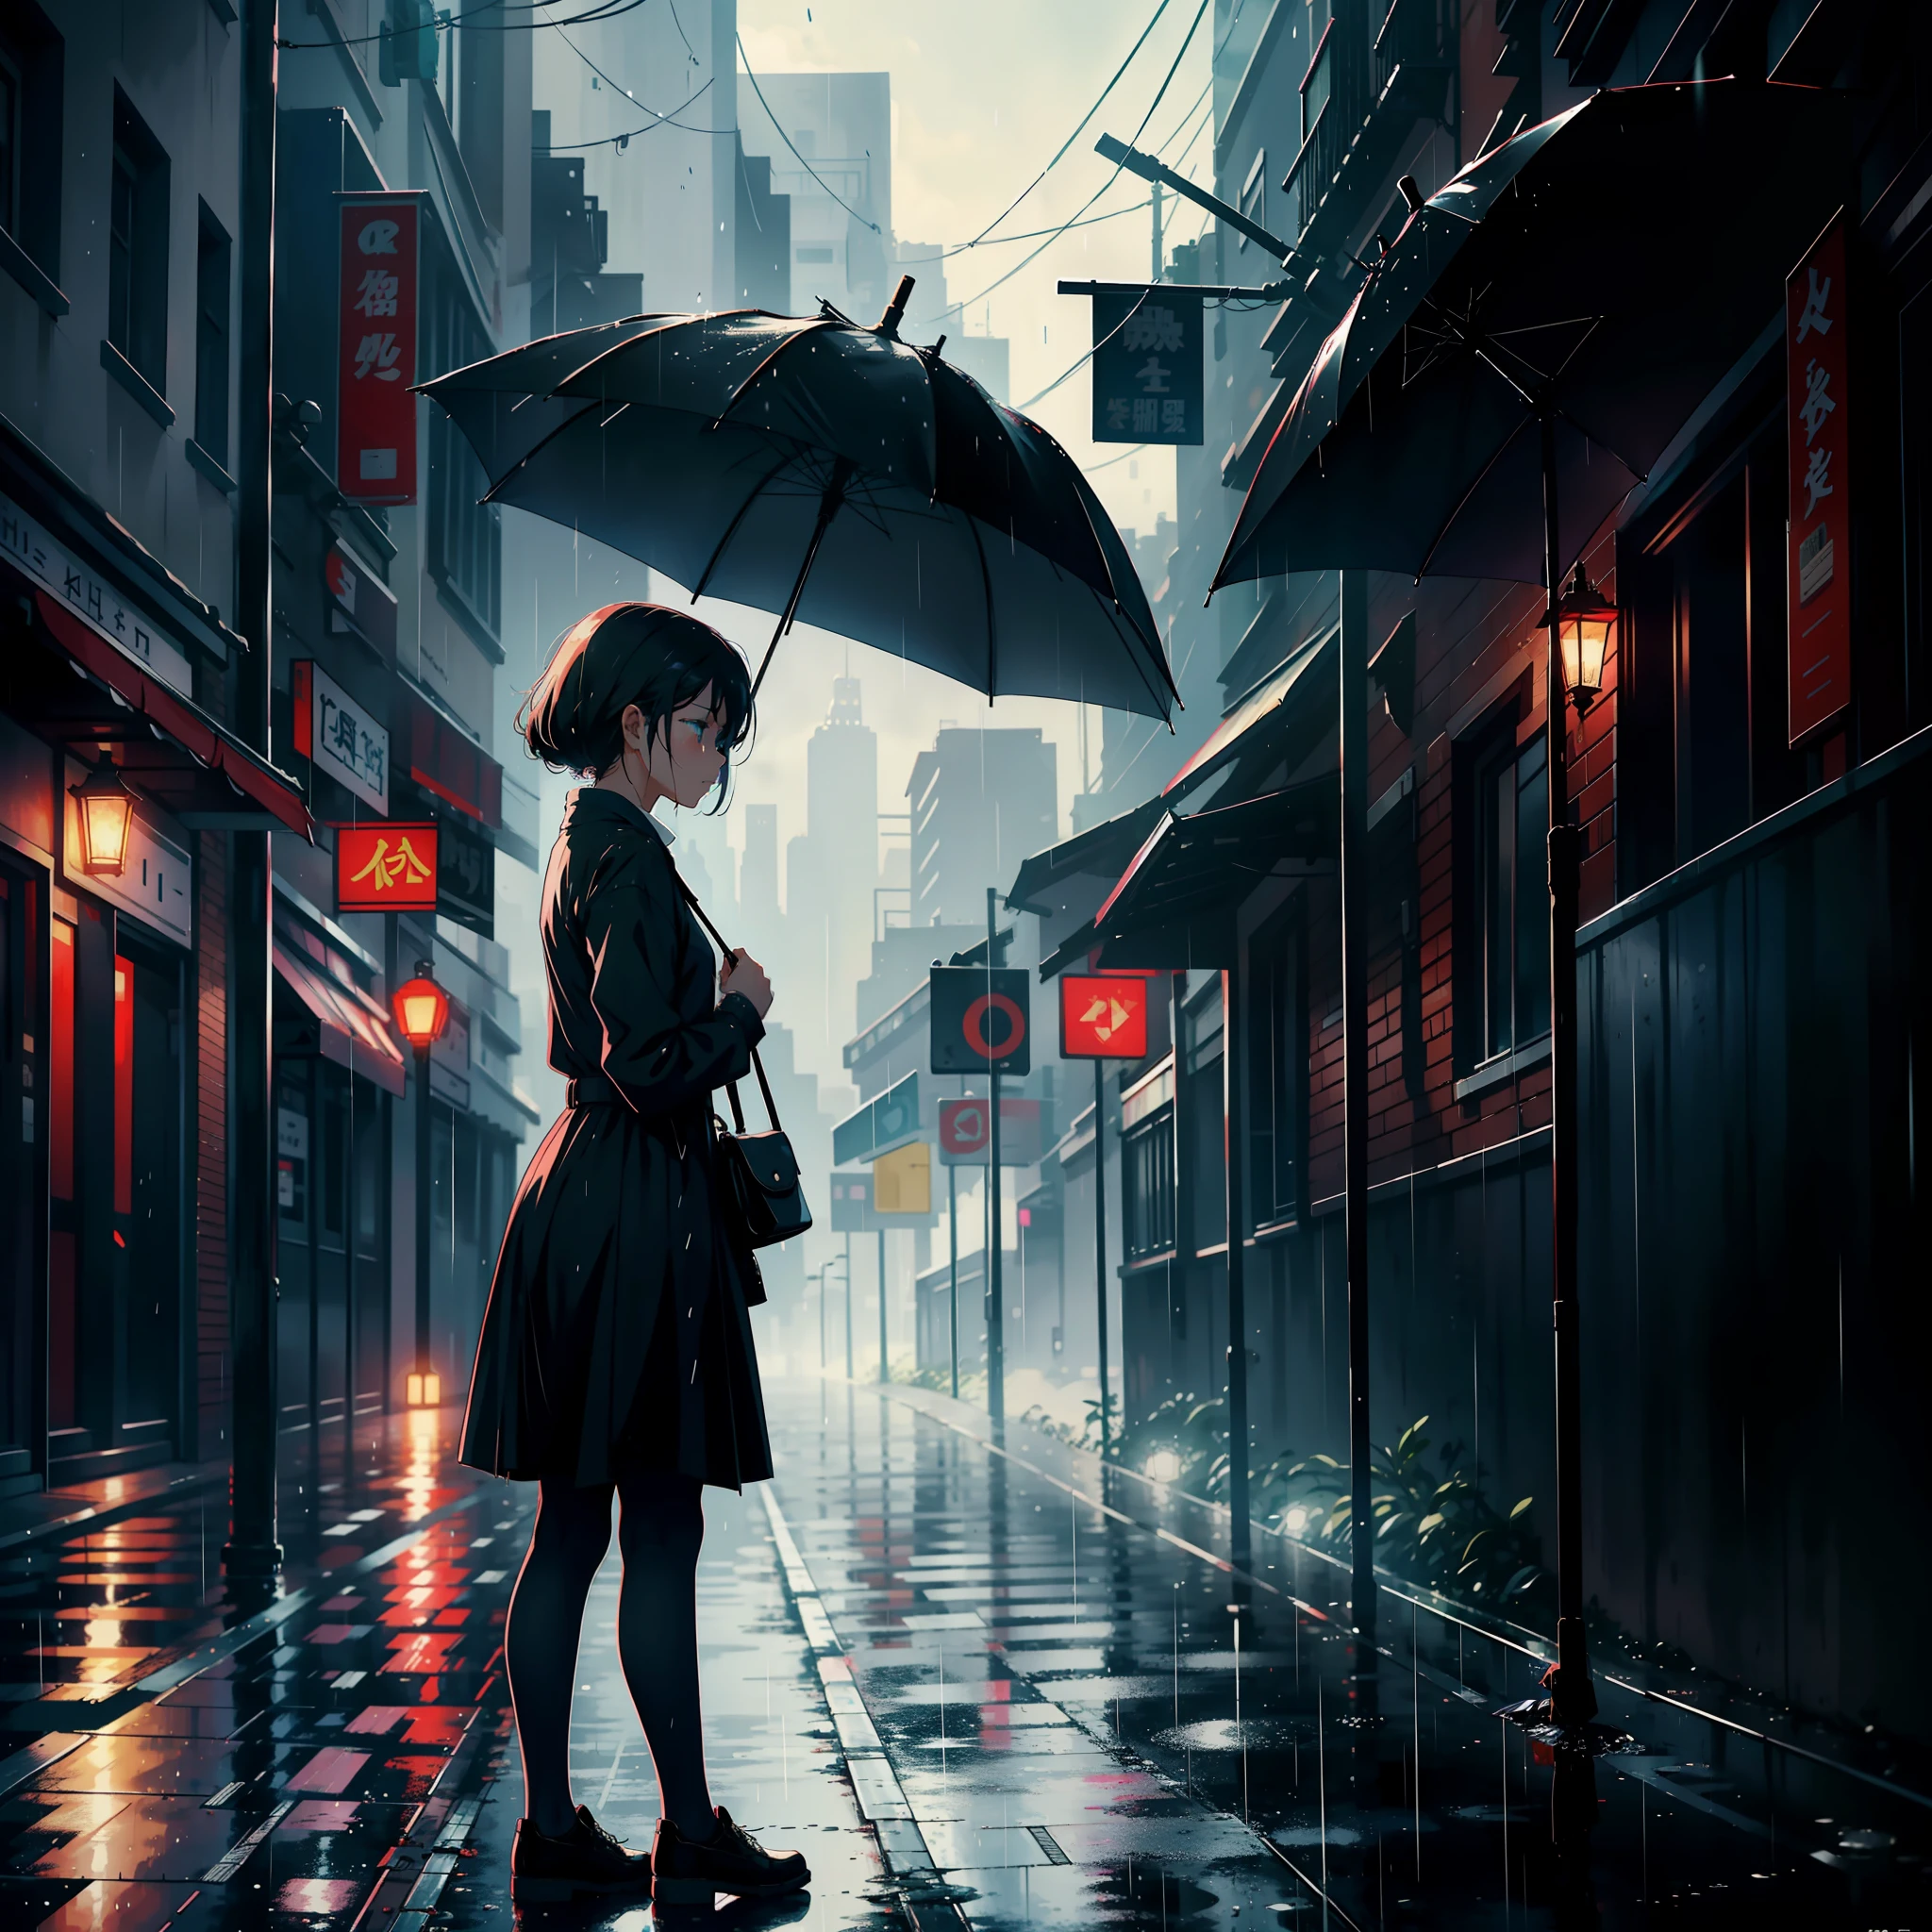 Uma menina com um guarda-chuva estava ao lado da rua, choro, parecendo triste e chovendo